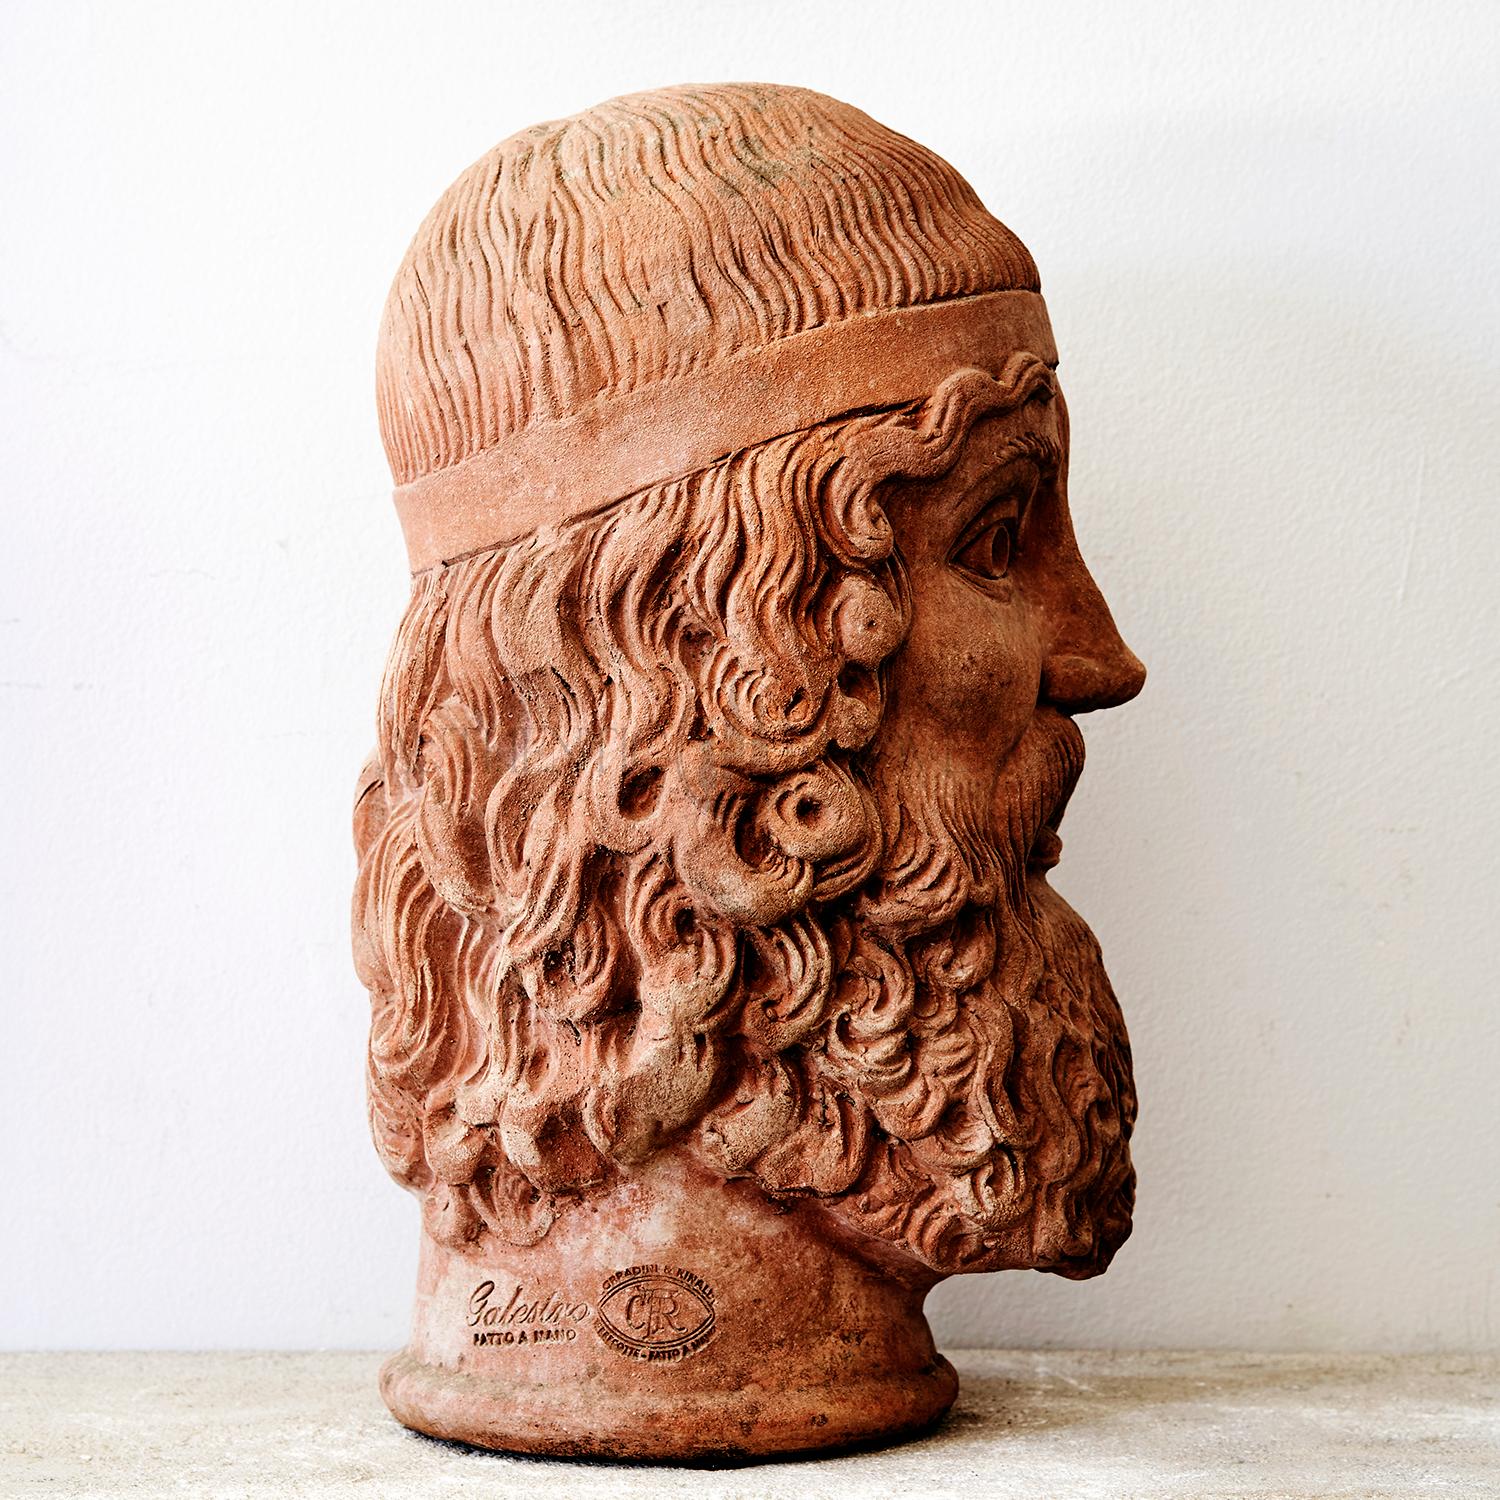 Cette tête italienne vintage détaillée est faite de terre cuite artisanale, en bon état. Usures dues à l'âge et à l'utilisation. circa 1918, Italie.

Le Bronzo di Riace est l'un des bronzes grecs représentant des guerriers barbus nus trouvés dans